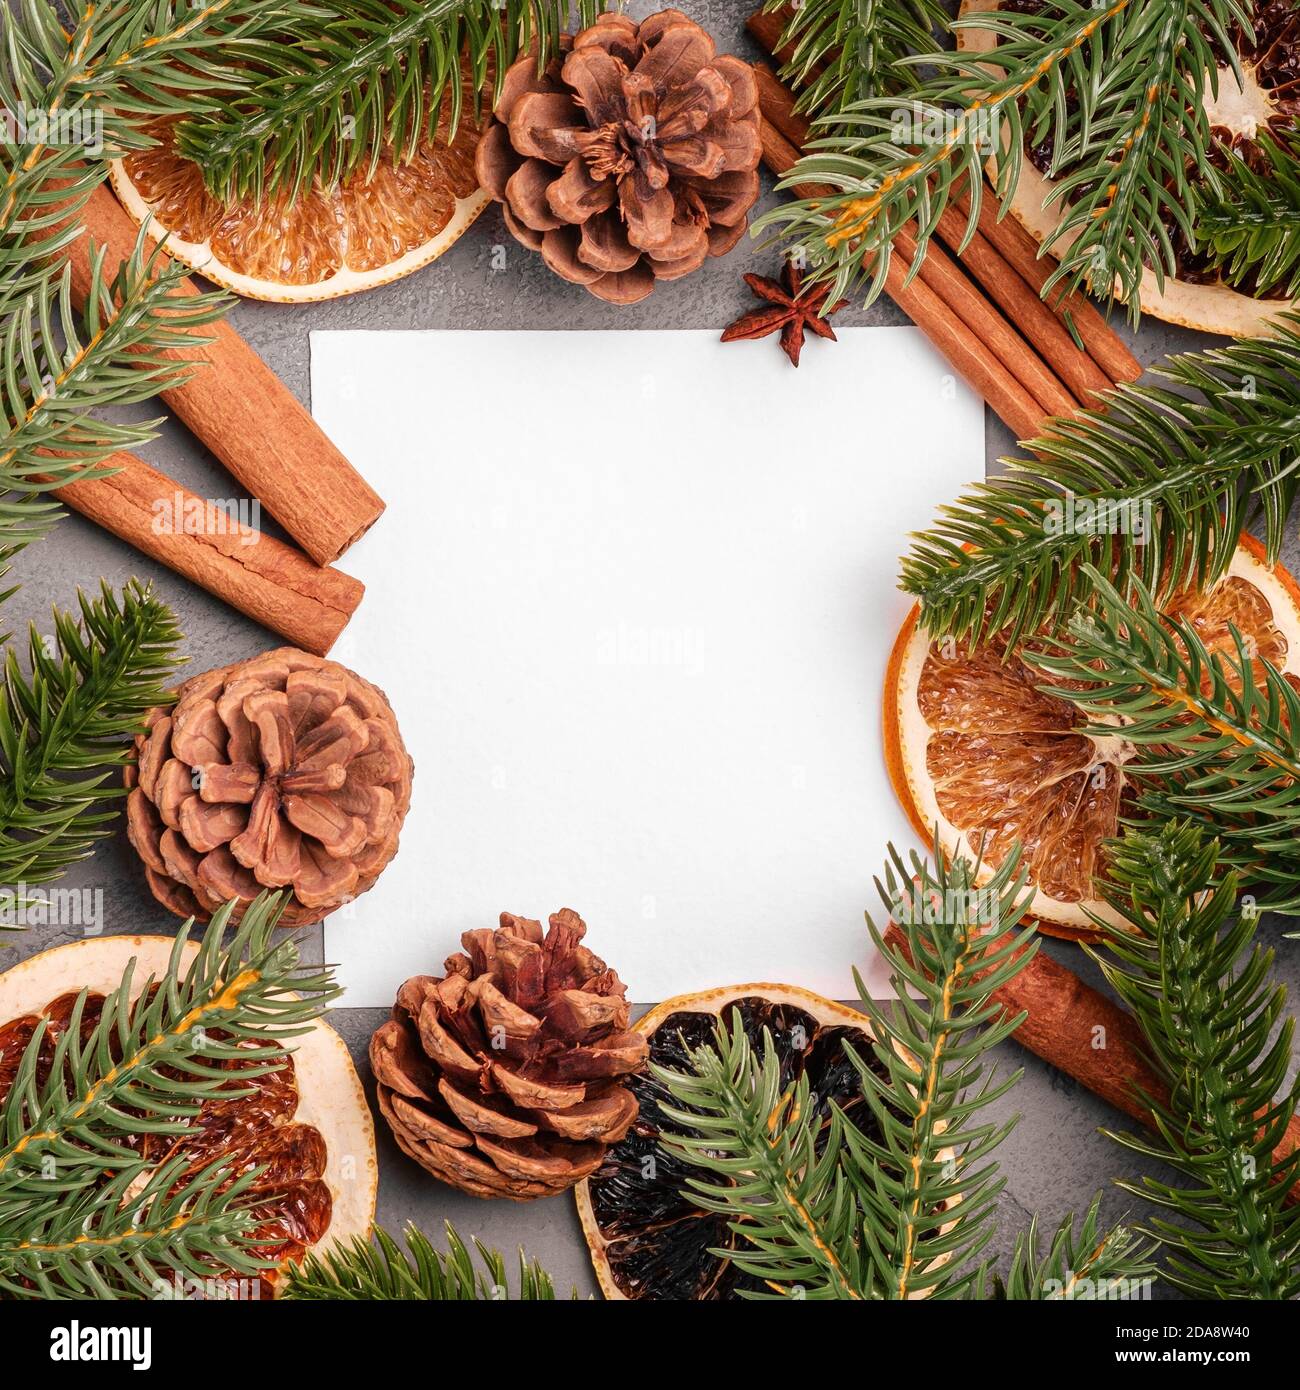 Composizione di Natale mockup. Decorazioni in cannella, anice, frutta secca, coni di pino e aghi di abete su sfondo grigio Foto Stock